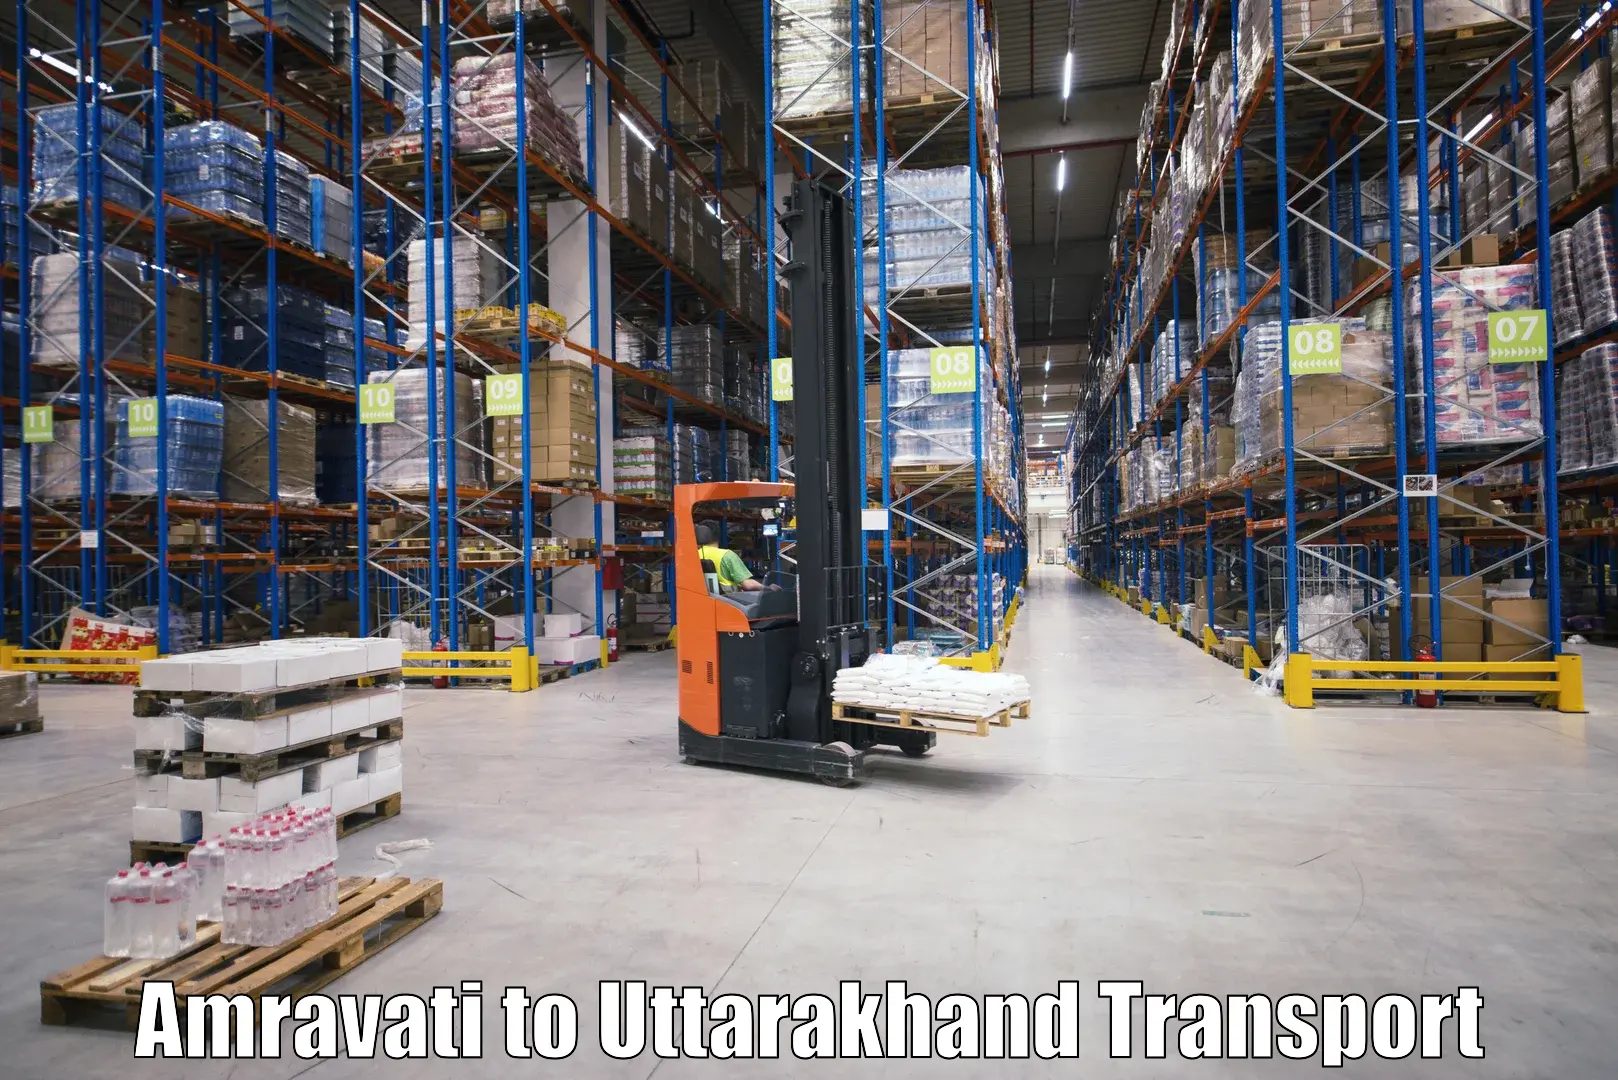 Nearest transport service Amravati to Dwarahat